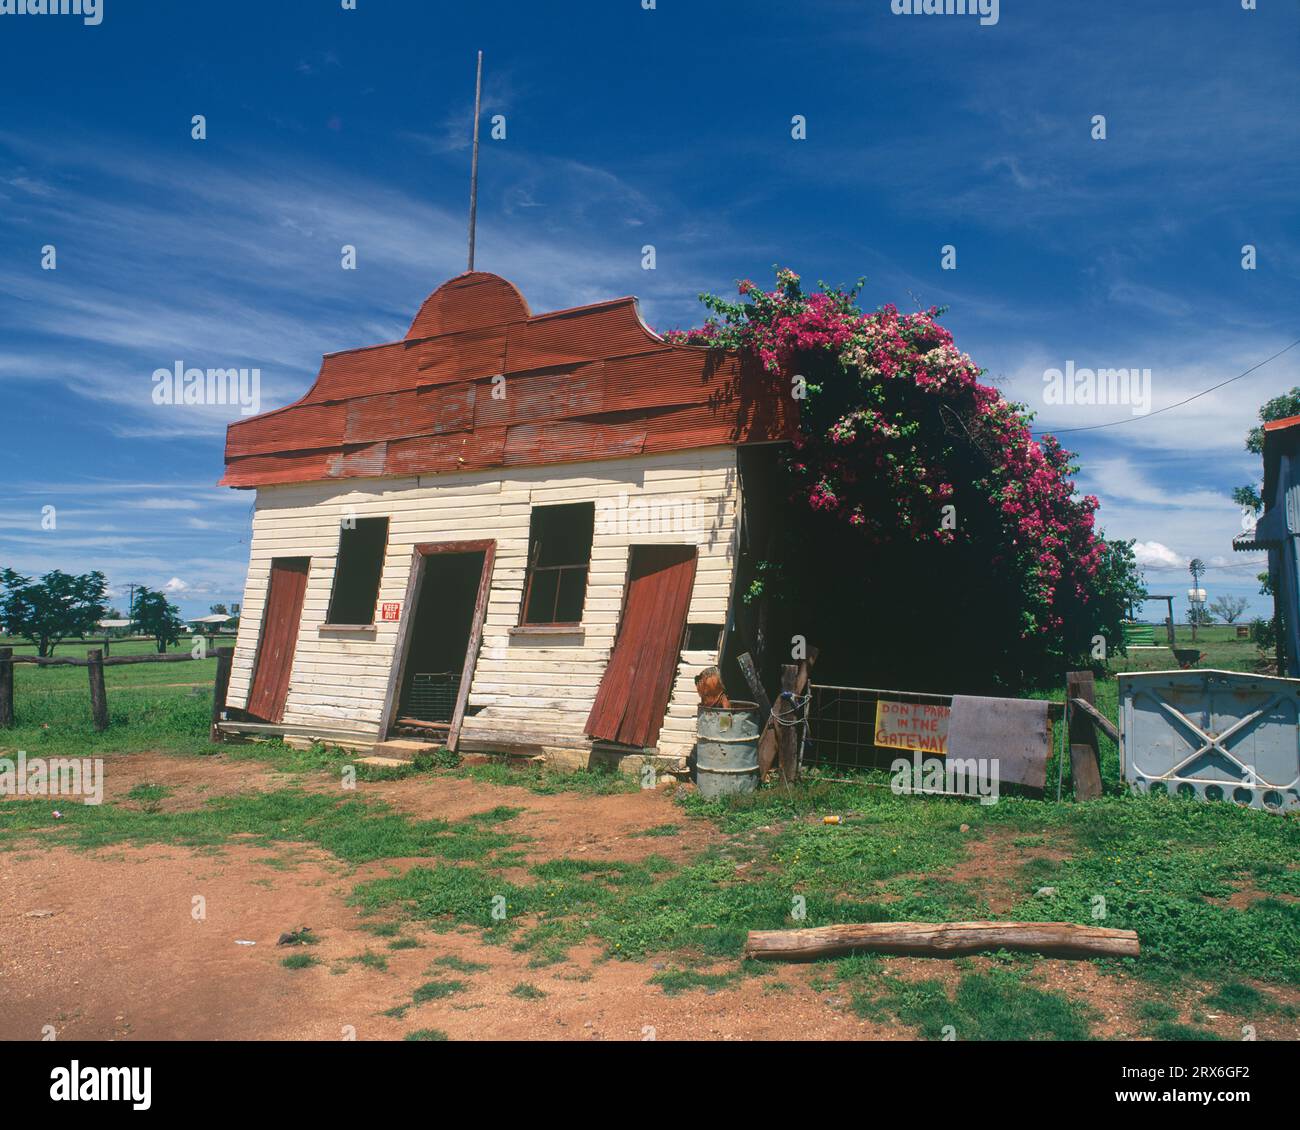 Australia. Queensland. Einasleigh. Derelict dance hall building (now demolished) Stock Photo